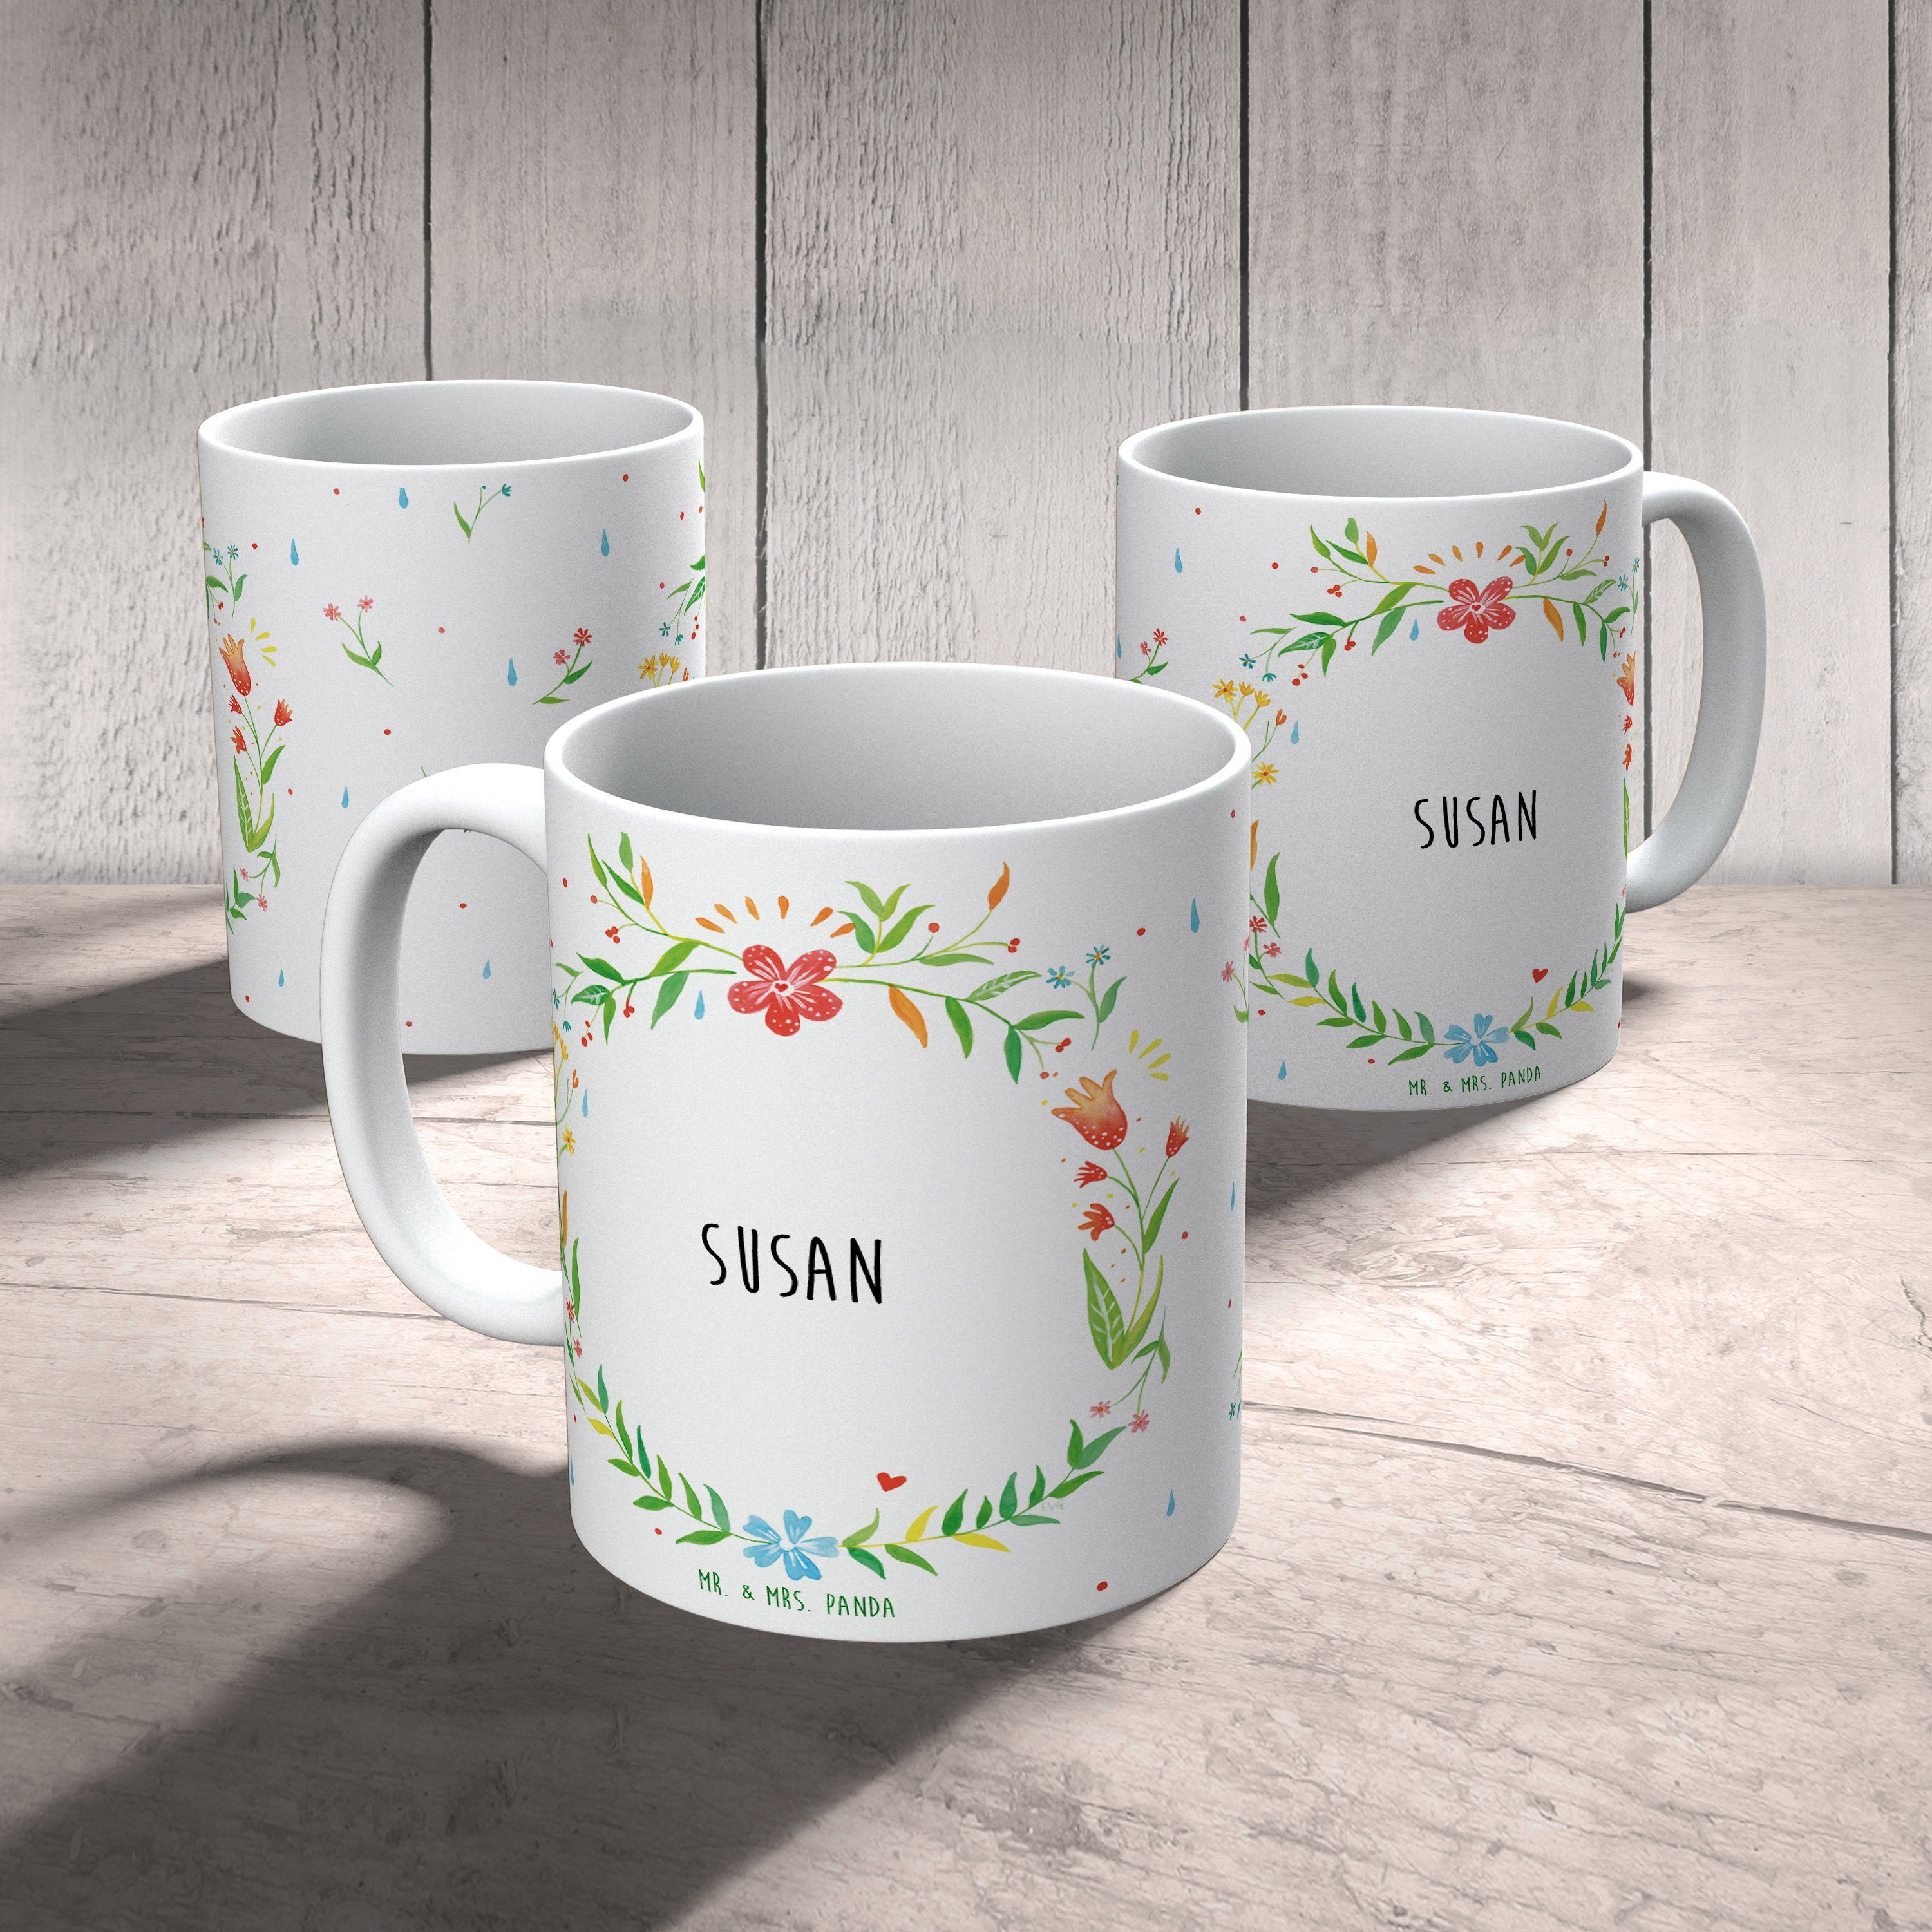 Tasse Teetasse, Susan & - Geschenk, Keramik Tasse Keramiktasse, Mrs. Panda Mr. Sprüche, Kaffeebecher,